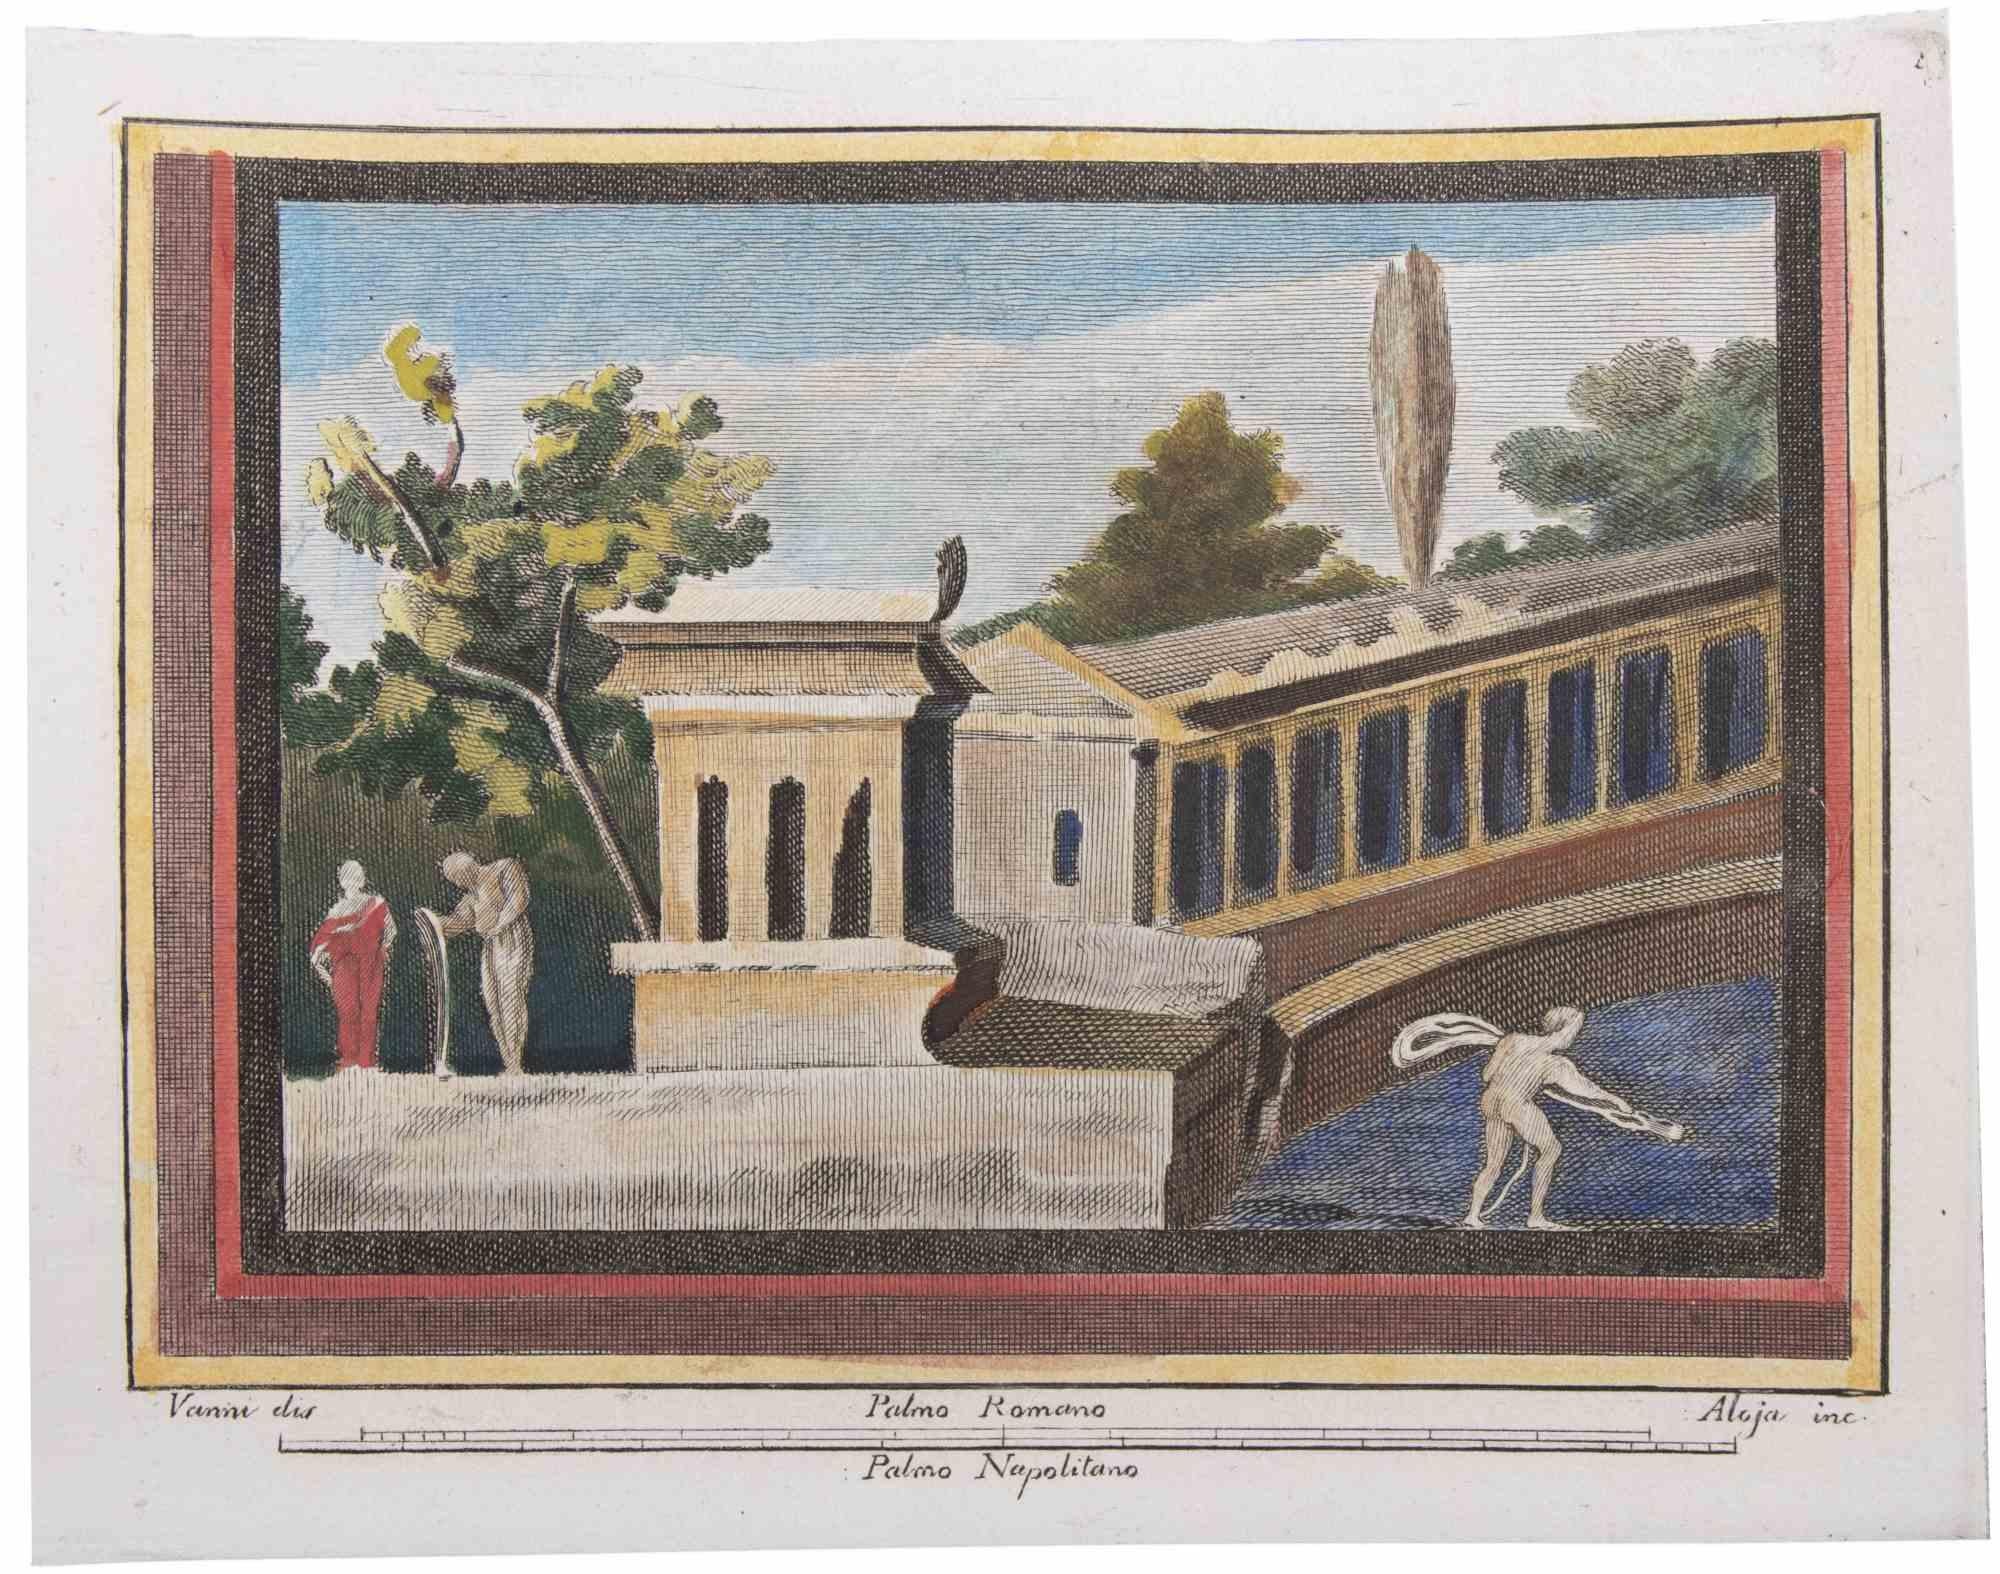 Das Fresko aus den "Altertümern von Herculaneum" ist eine Radierung auf Papier von Luigi Aloja aus dem 18. Jahrhundert.

Signiert auf der Platte.

Gute Bedingungen.

Die Radierung gehört zu der Druckserie "Antiquities of Herculaneum Exposed"